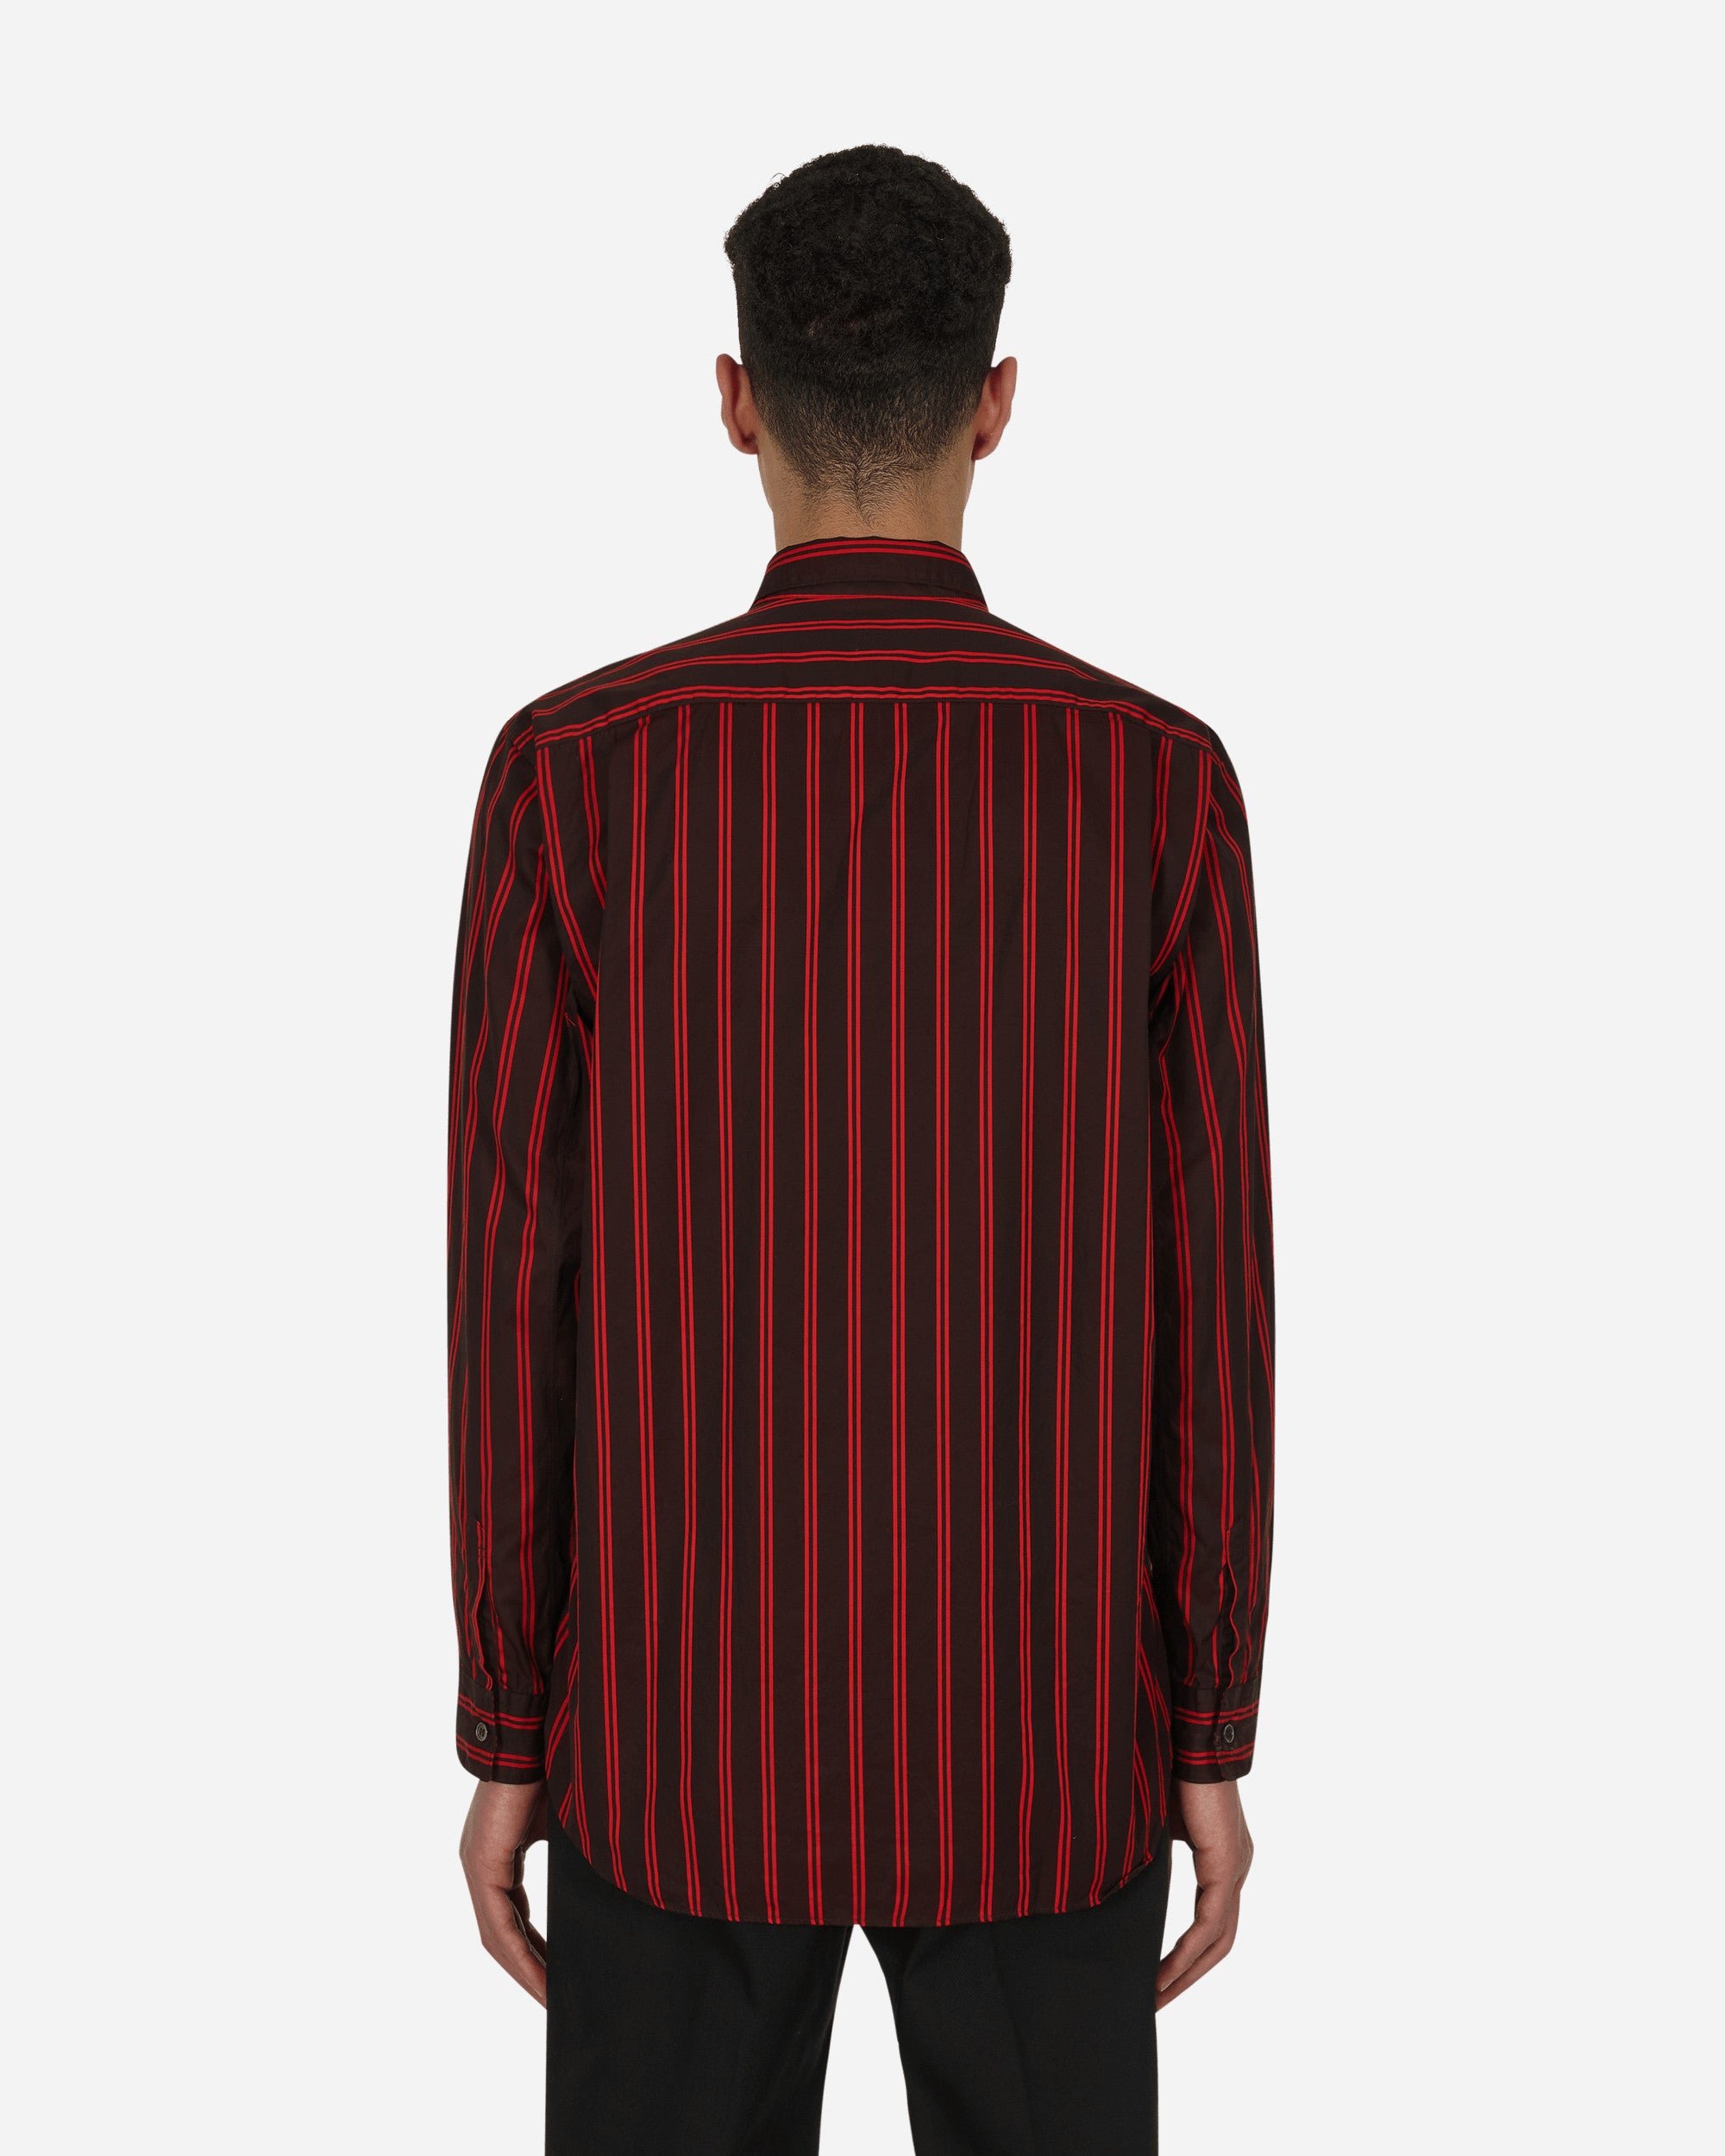 Comme Des Garçons Shirt Shirt Woven Stripes Red Shirts Longsleeve FI-B017 1